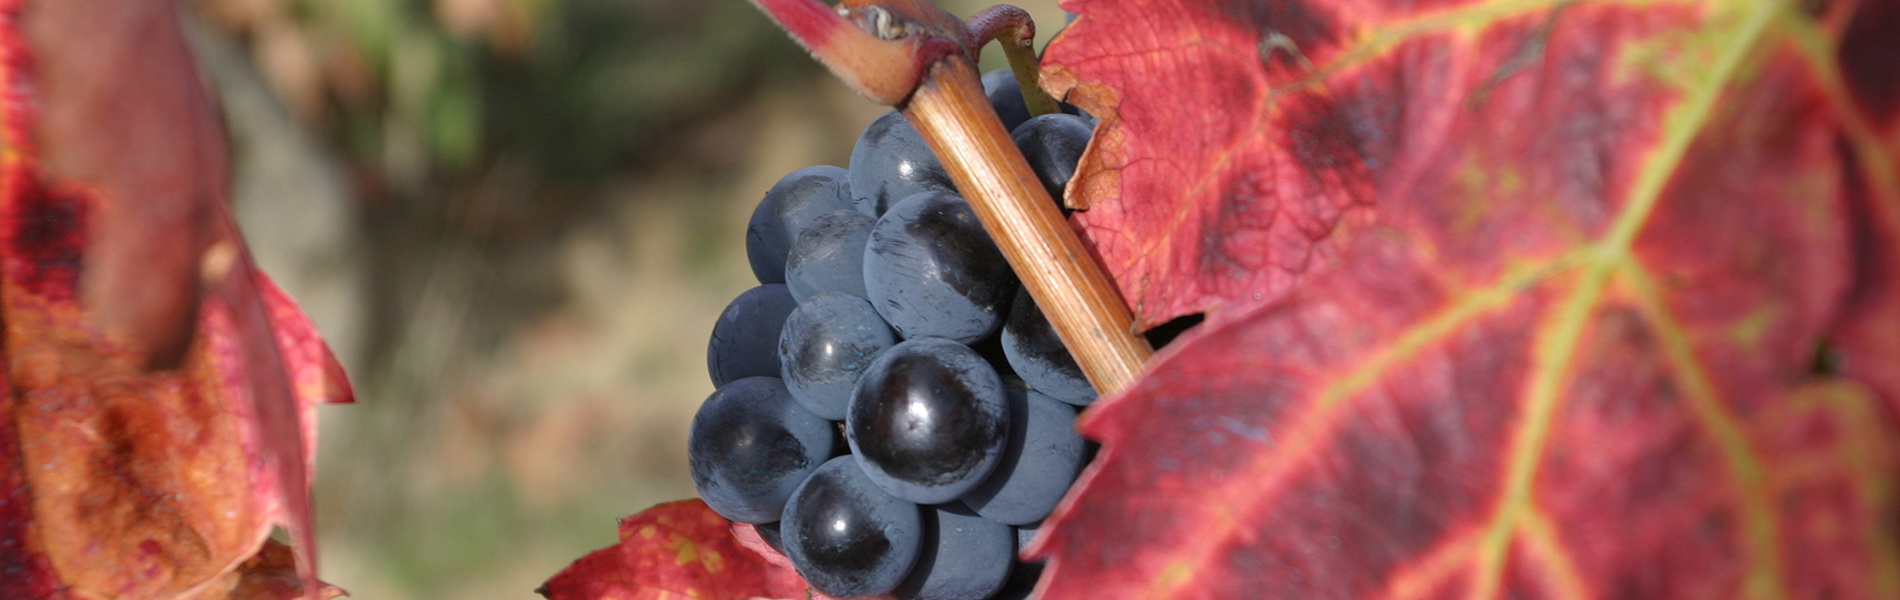 El viñedo mantiene un estado vegetativo correcto.